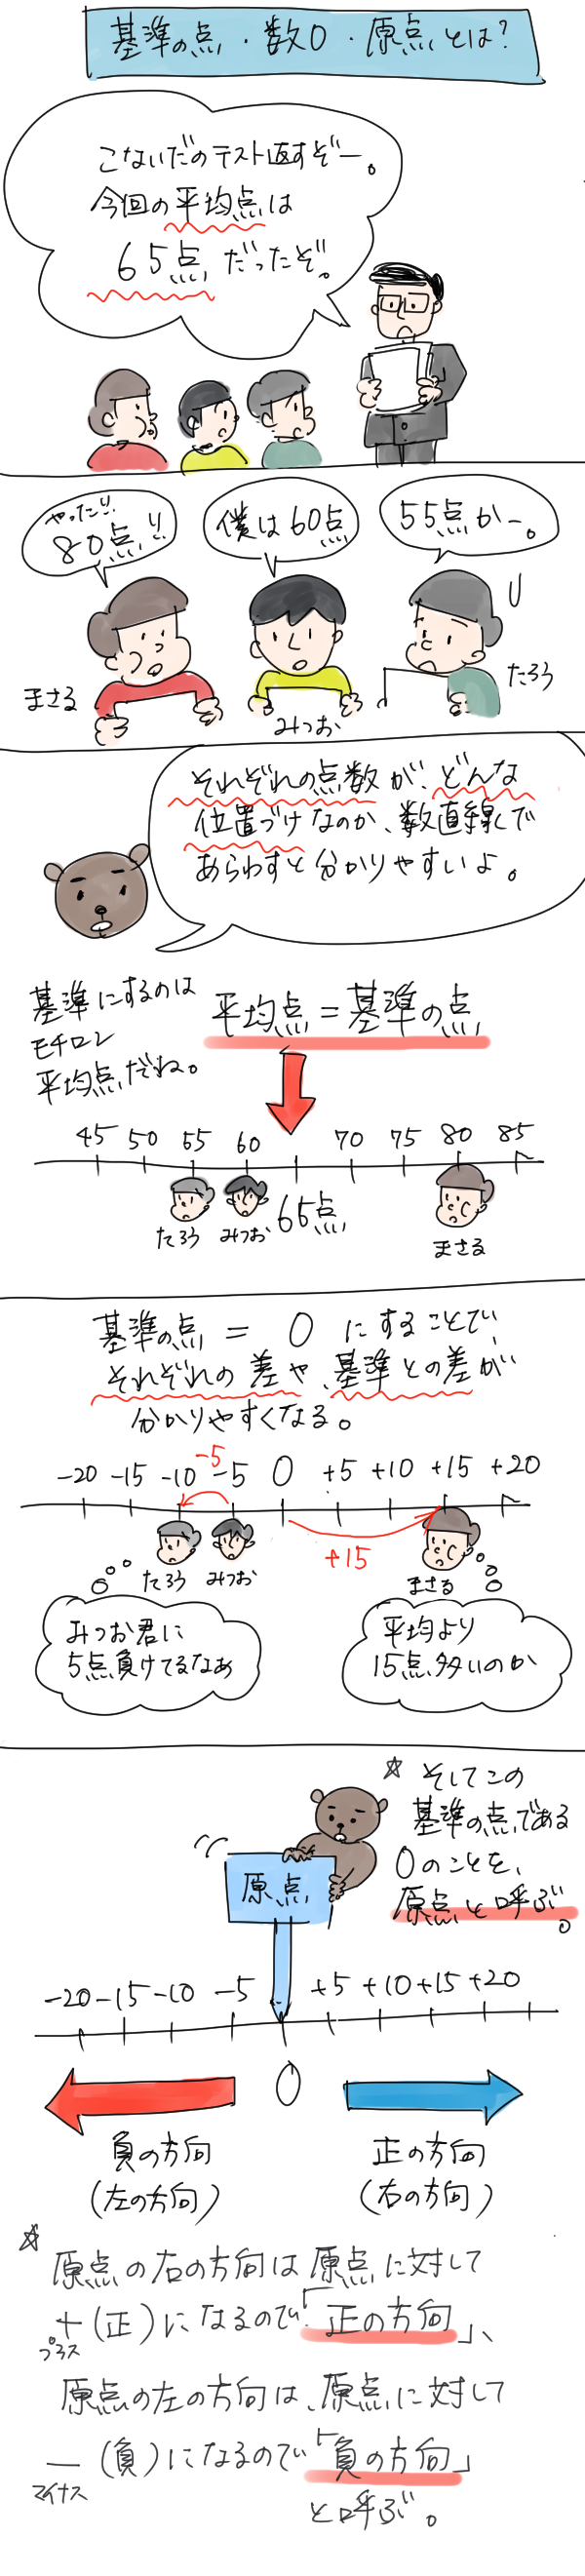 数直線の基準の点・数0・原点とは何かを説明した漫画